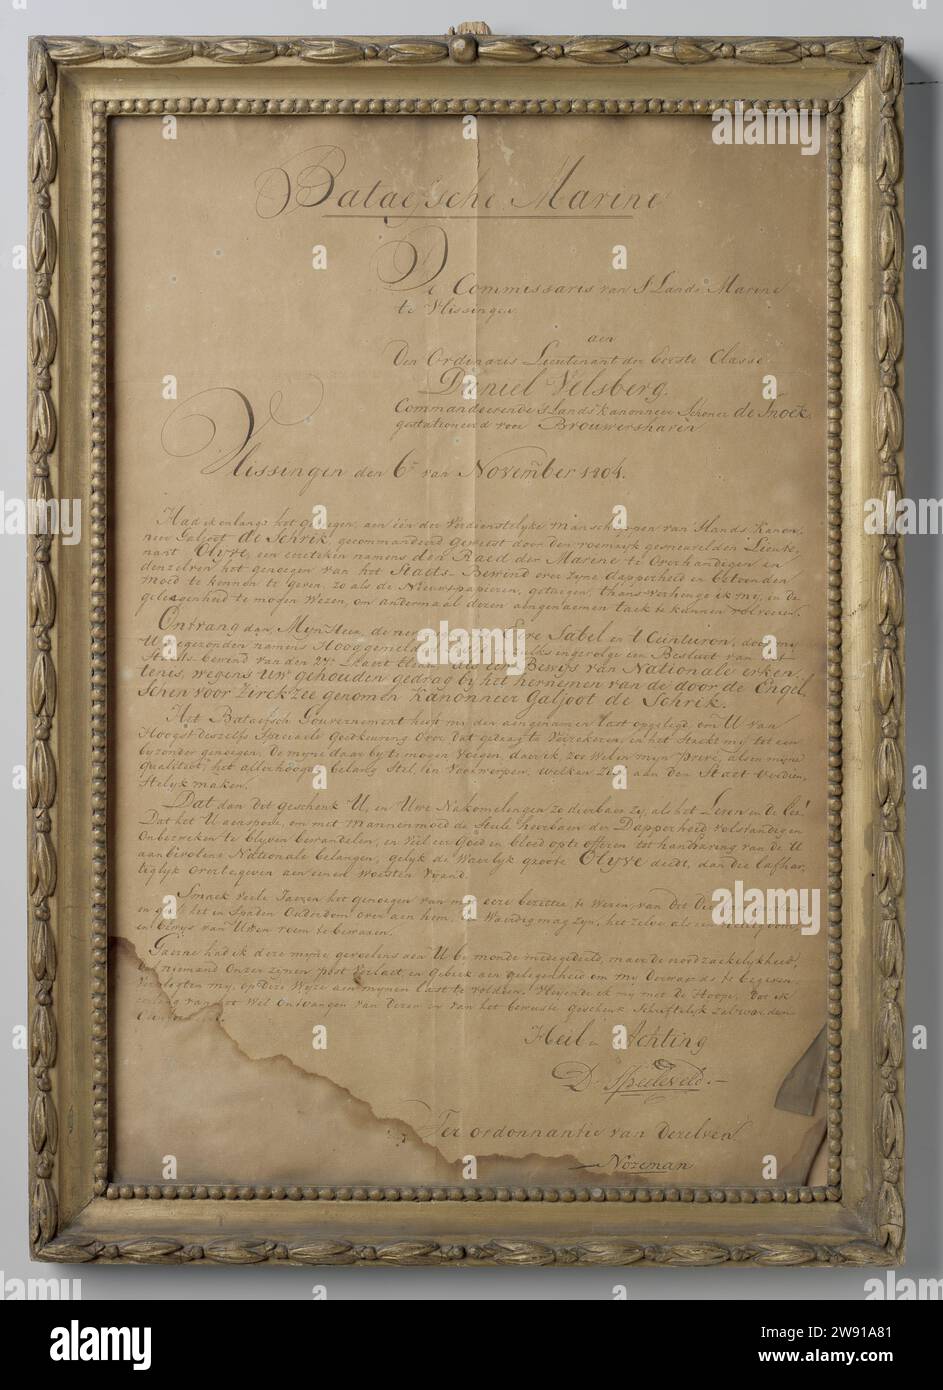 Lettera di D. Speeleveld a D. Velsberg 6 novembre 1804, D. Speeleveld, lettera del 1804, confermata su uno scaffale, in una lista dorata dietro vetro. Nella lettera, D. Speeleveld offre un'etichetta onoraria (NM-8927-A) e il Ceinturon a Daniël Velsberg per la sua riconquista del cannoniere galjoot preso dagli inglesi per Zierikzee. Speeleveld si scusa per aver dovuto farlo per lettera. Firmato: RO.: D. Speeleveld. Per ordinanza del senior./ nozeman. Datato. Iscrizione: Bataefsch Marine il Commissario della S 'Lands Marine a Vlissingen. E l'ordinaris Lieutenant der (ecc.). Ferro di risciacquo (metallo). inchiostro. w Foto Stock